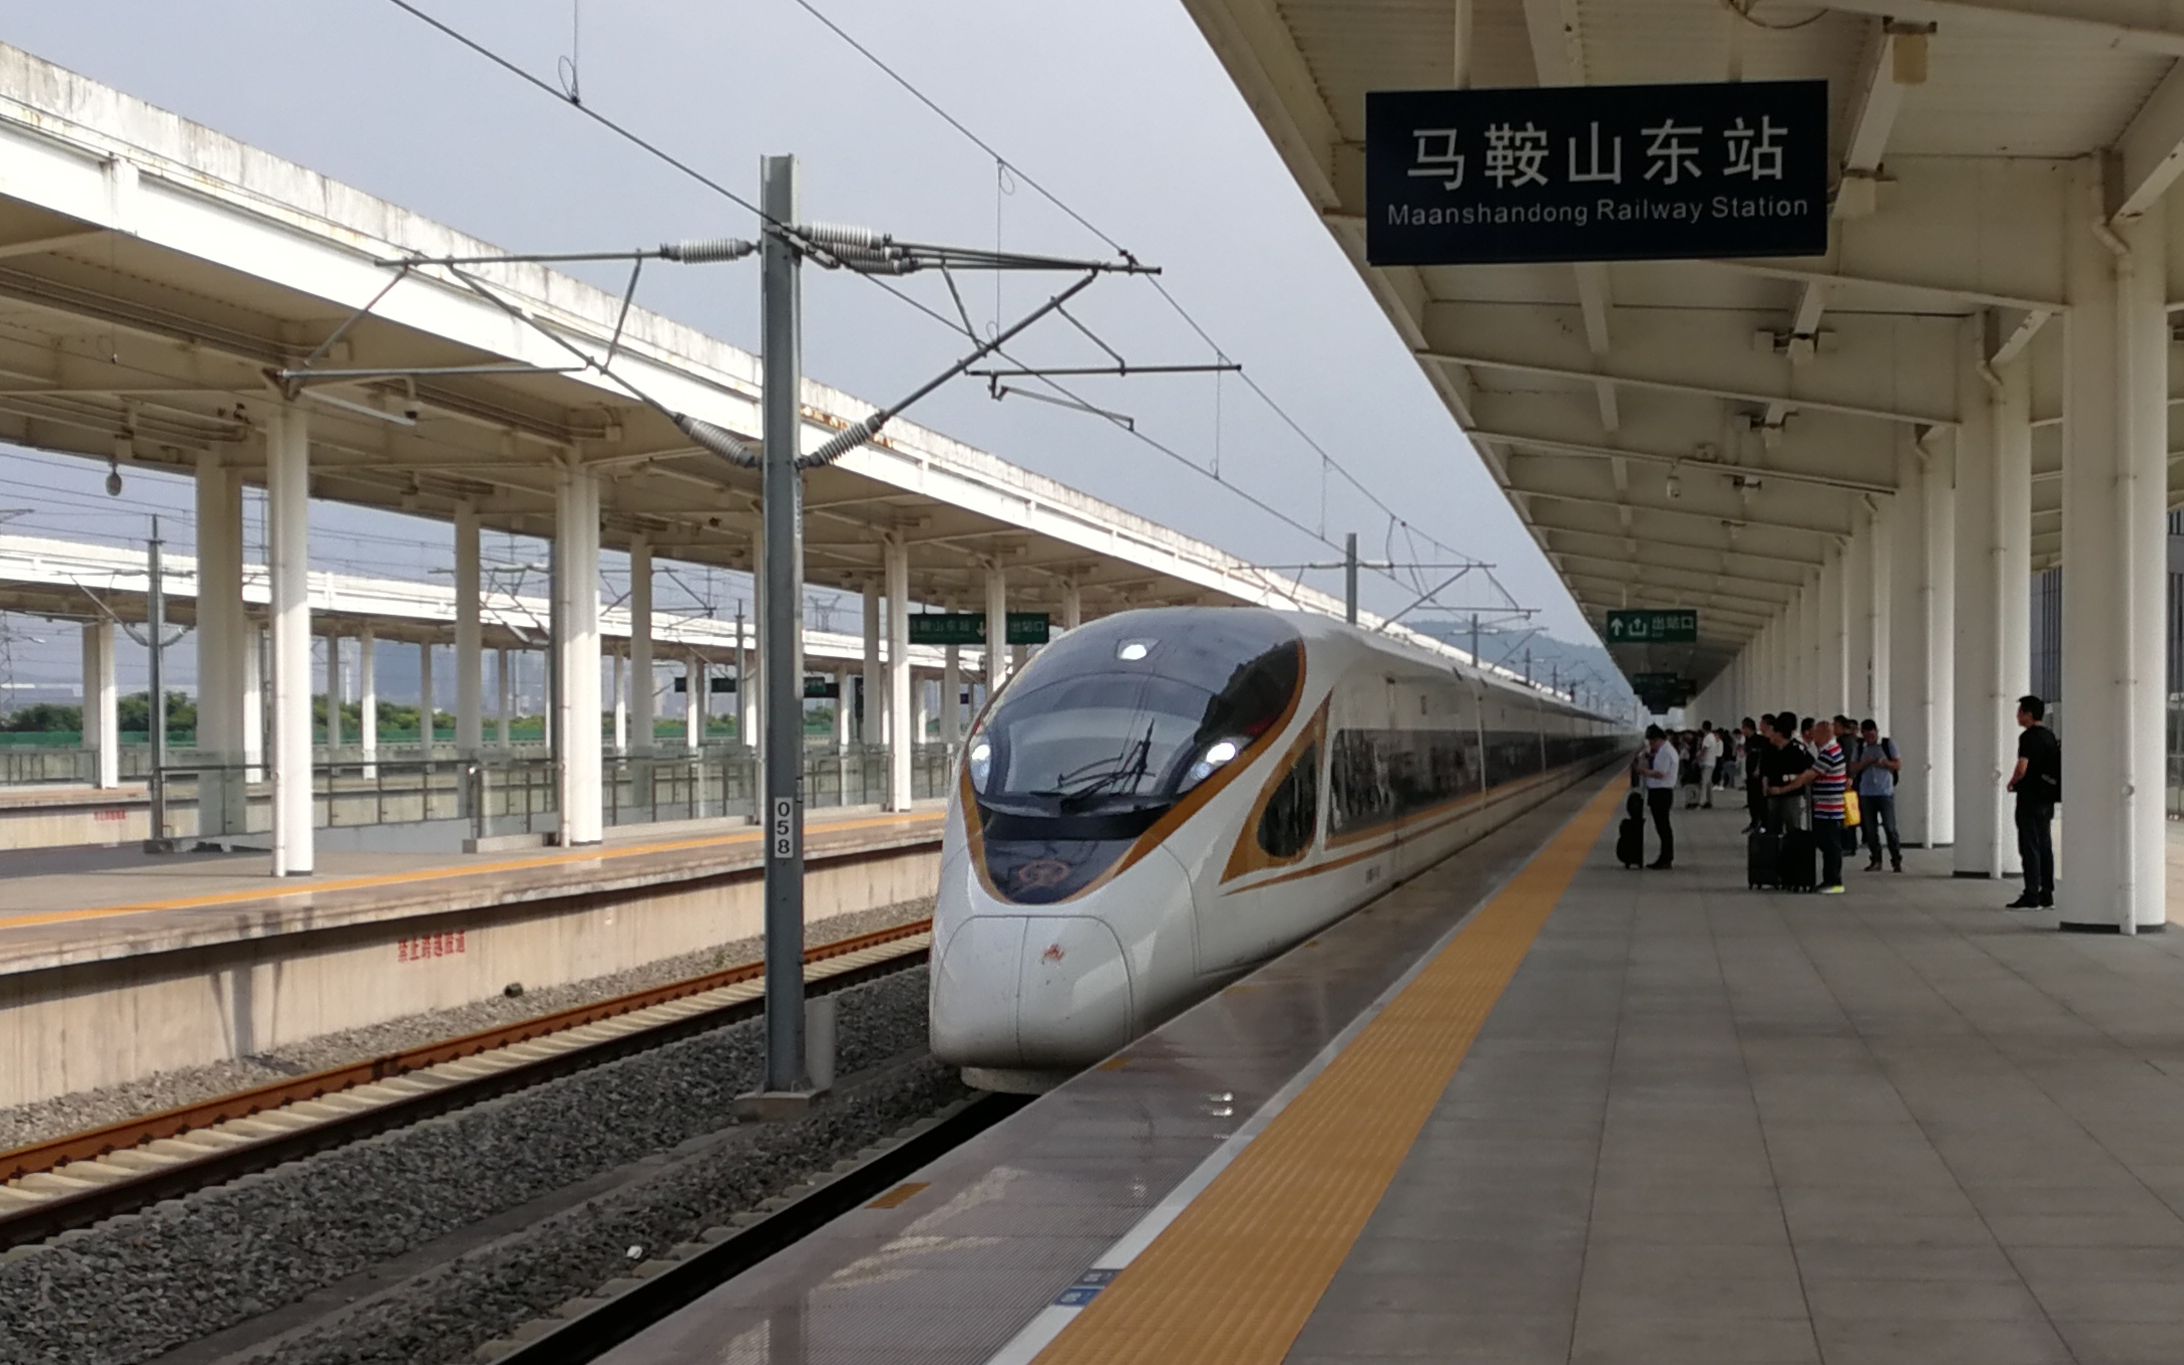 【虹羽交通联合】【cr032】中国铁路g7146(马鞍山东